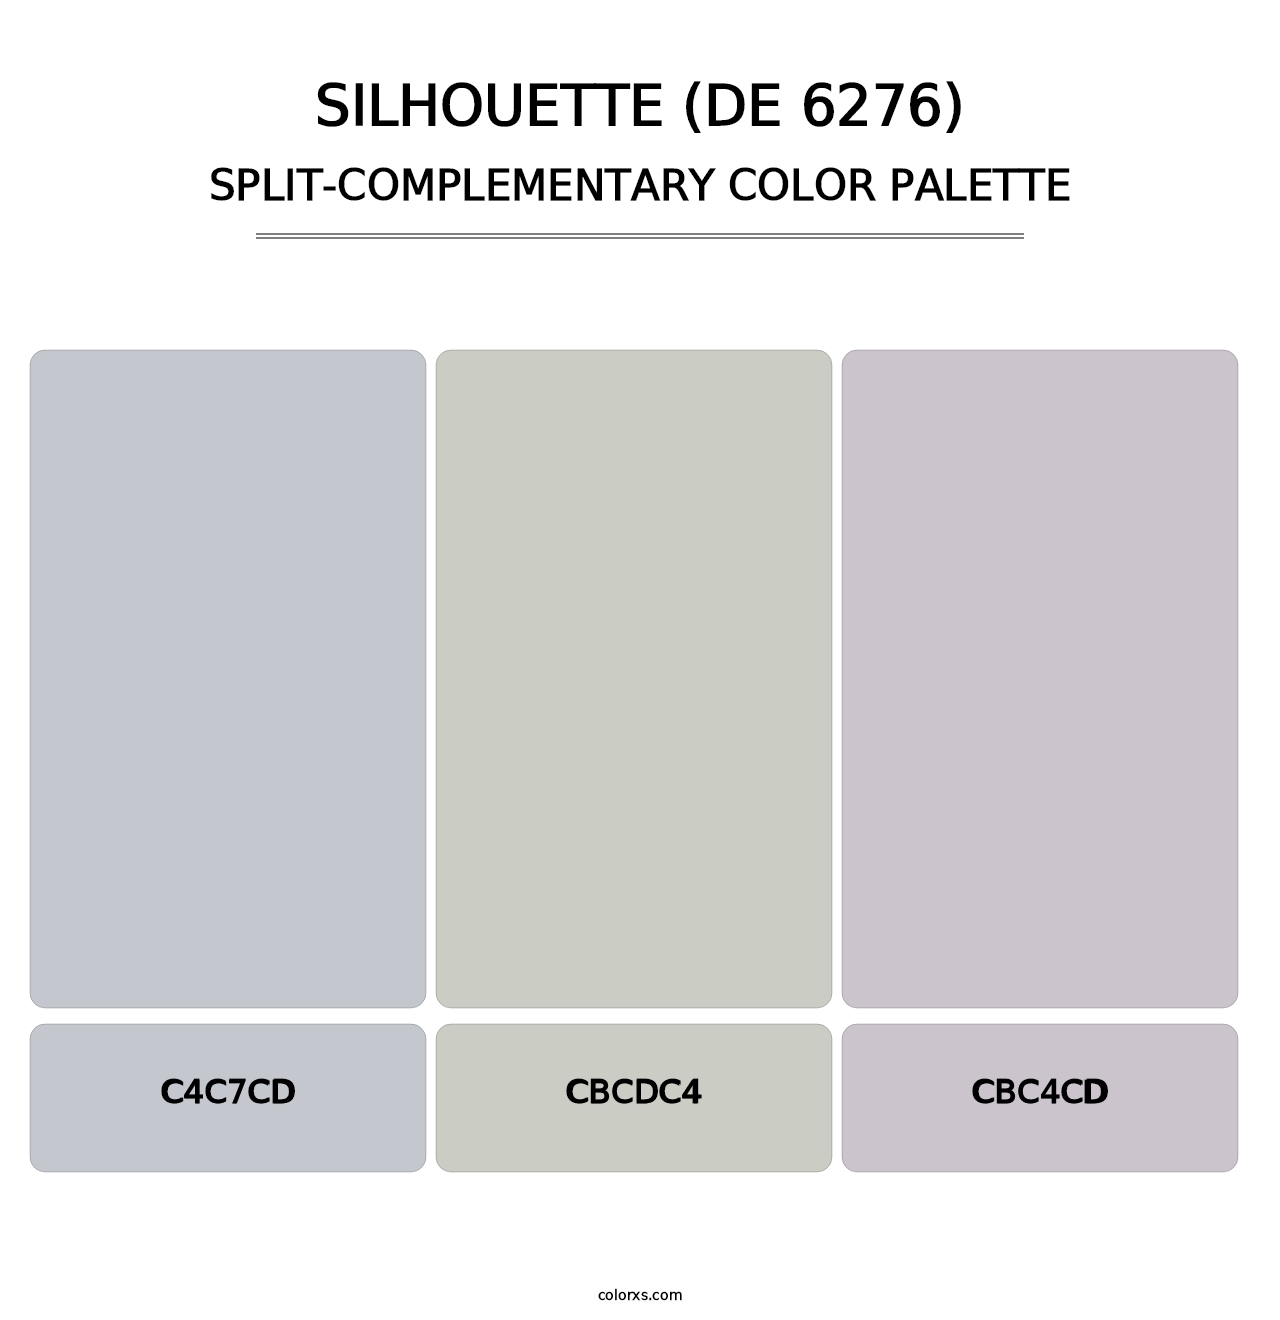 Silhouette (DE 6276) - Split-Complementary Color Palette